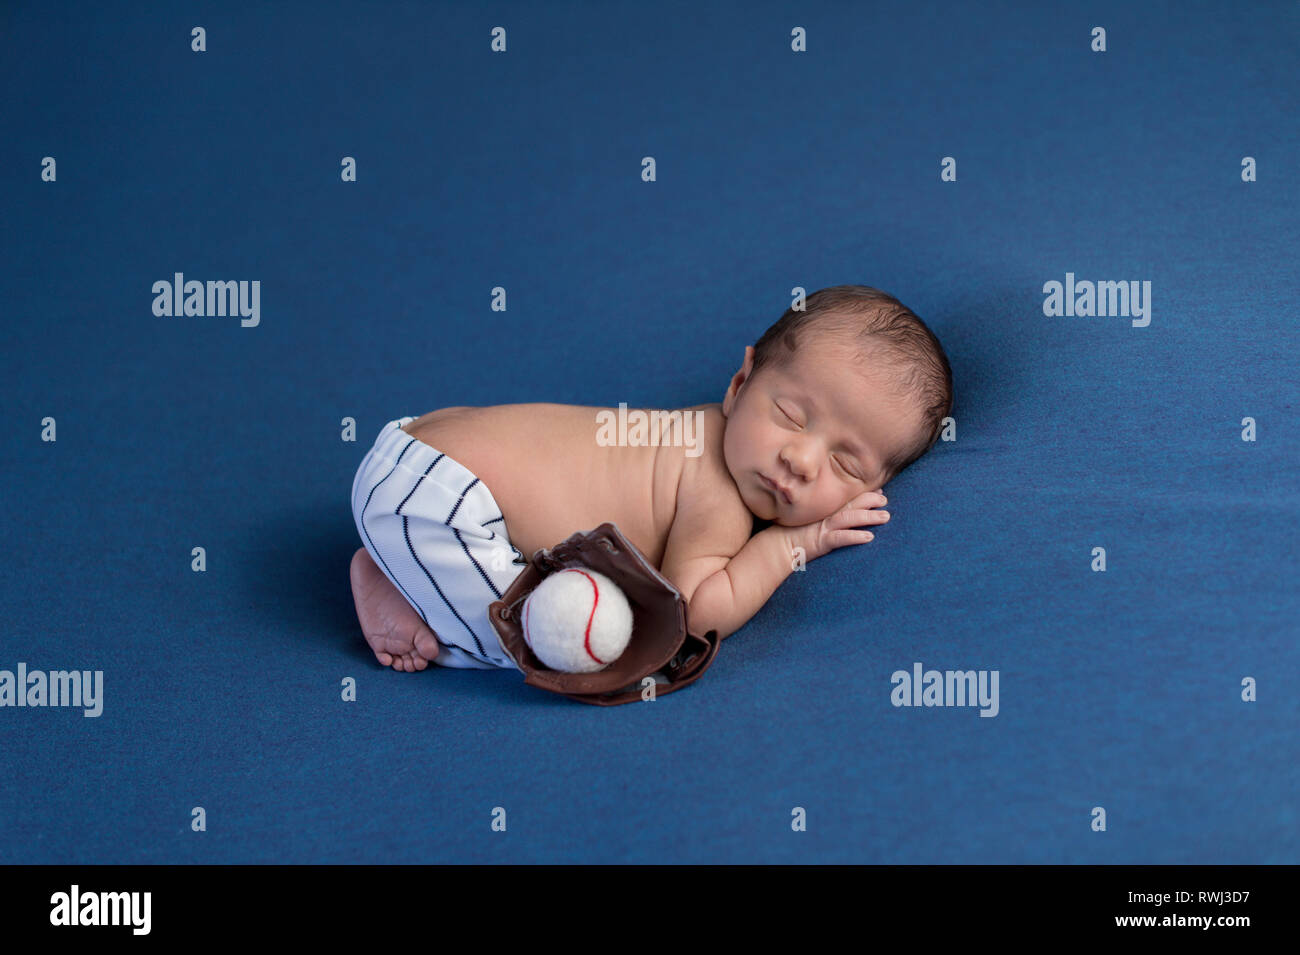 Eine Woche alt, Schlafen, neugeborenes Baby Boy tragen Baseball uniform Hose mit Mitt ist ein Blickfang und Ball. Stockfoto